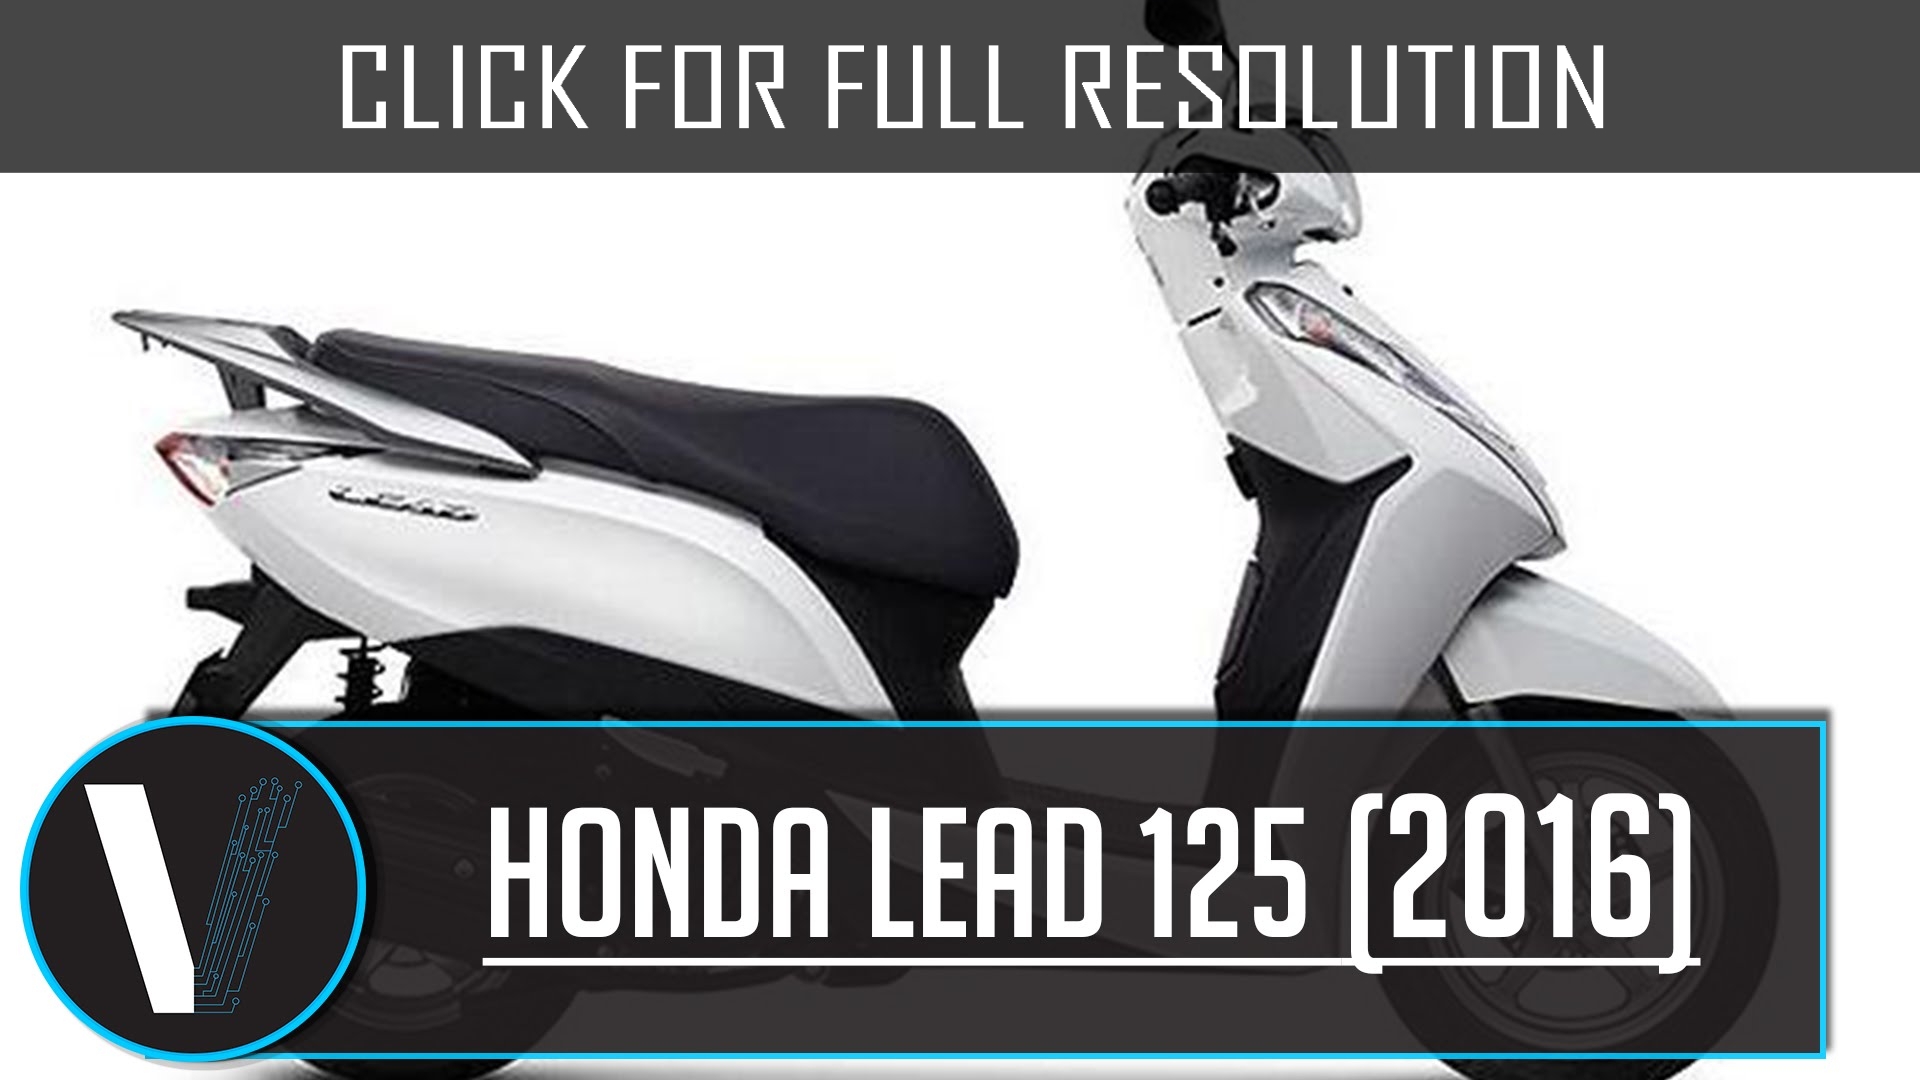 Honda Lead 125